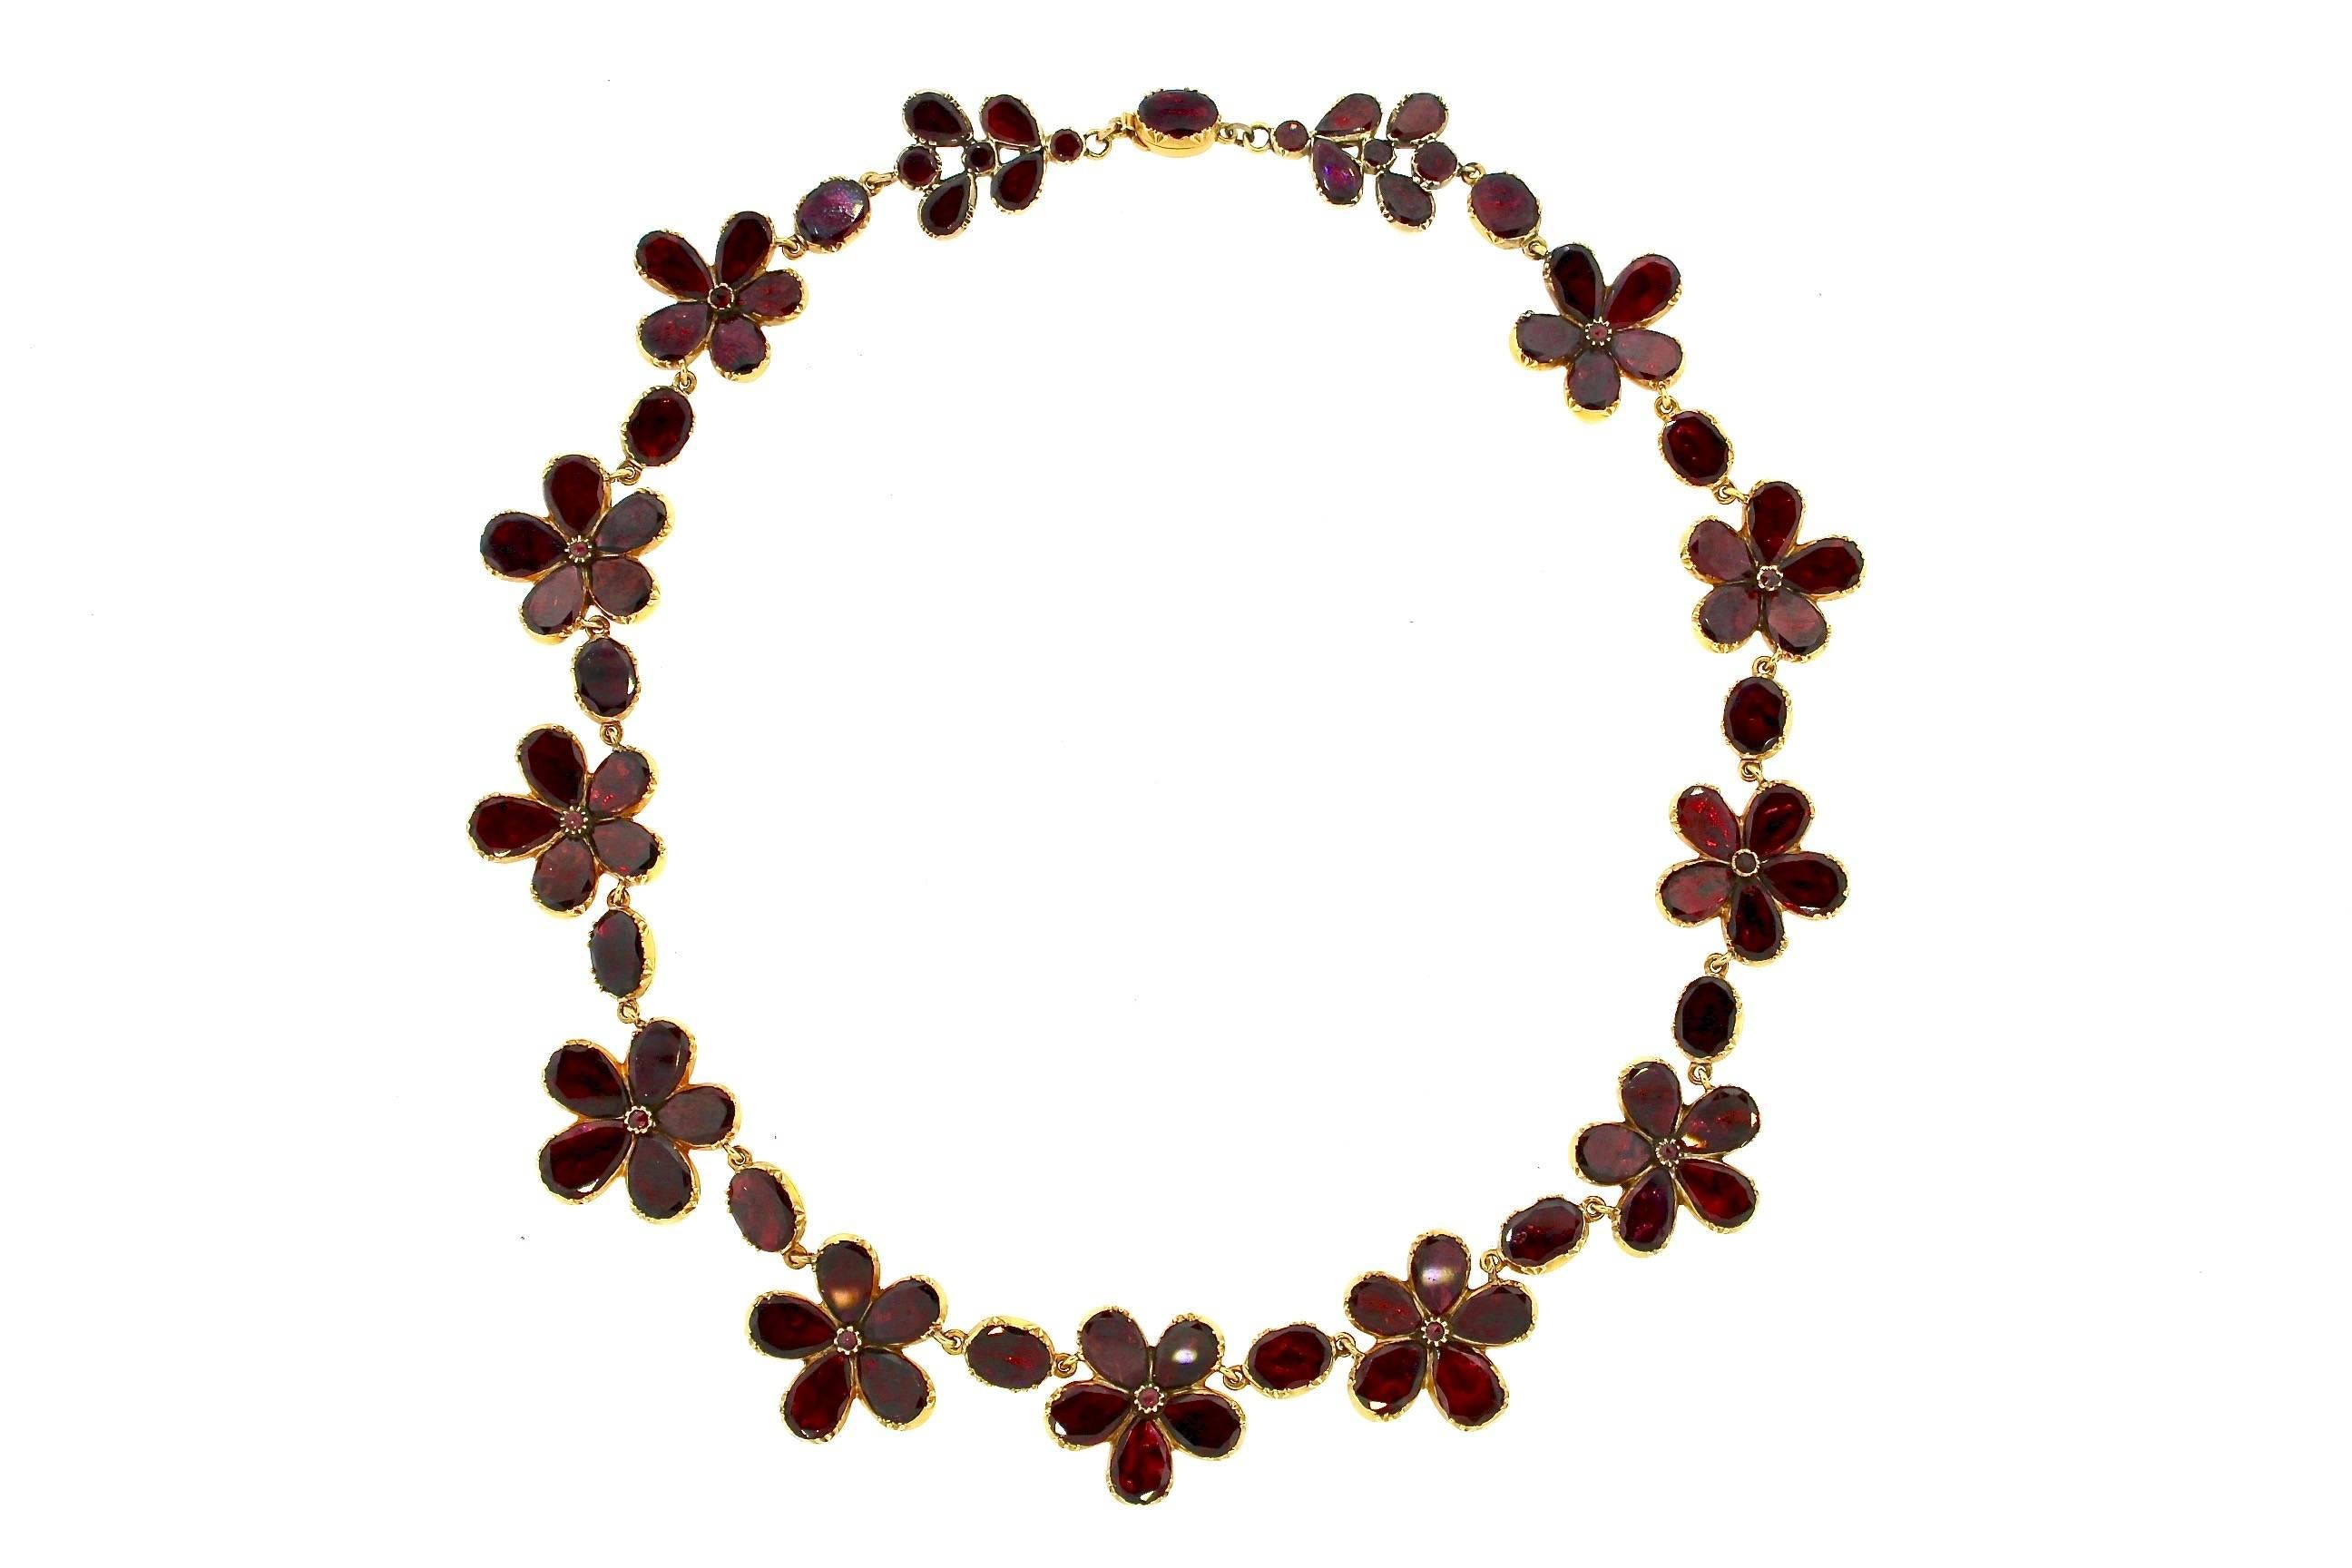 Ein feminines und lebendiges Collier, das, obwohl es über 200 Jahre alt ist, ein aktuelles und jugendliches Collier für heute ist. Rote Granate mit Folie auf der Rückseite bilden fünf spitze Blüten, zwischen denen ovale Granate eingefasst sind.